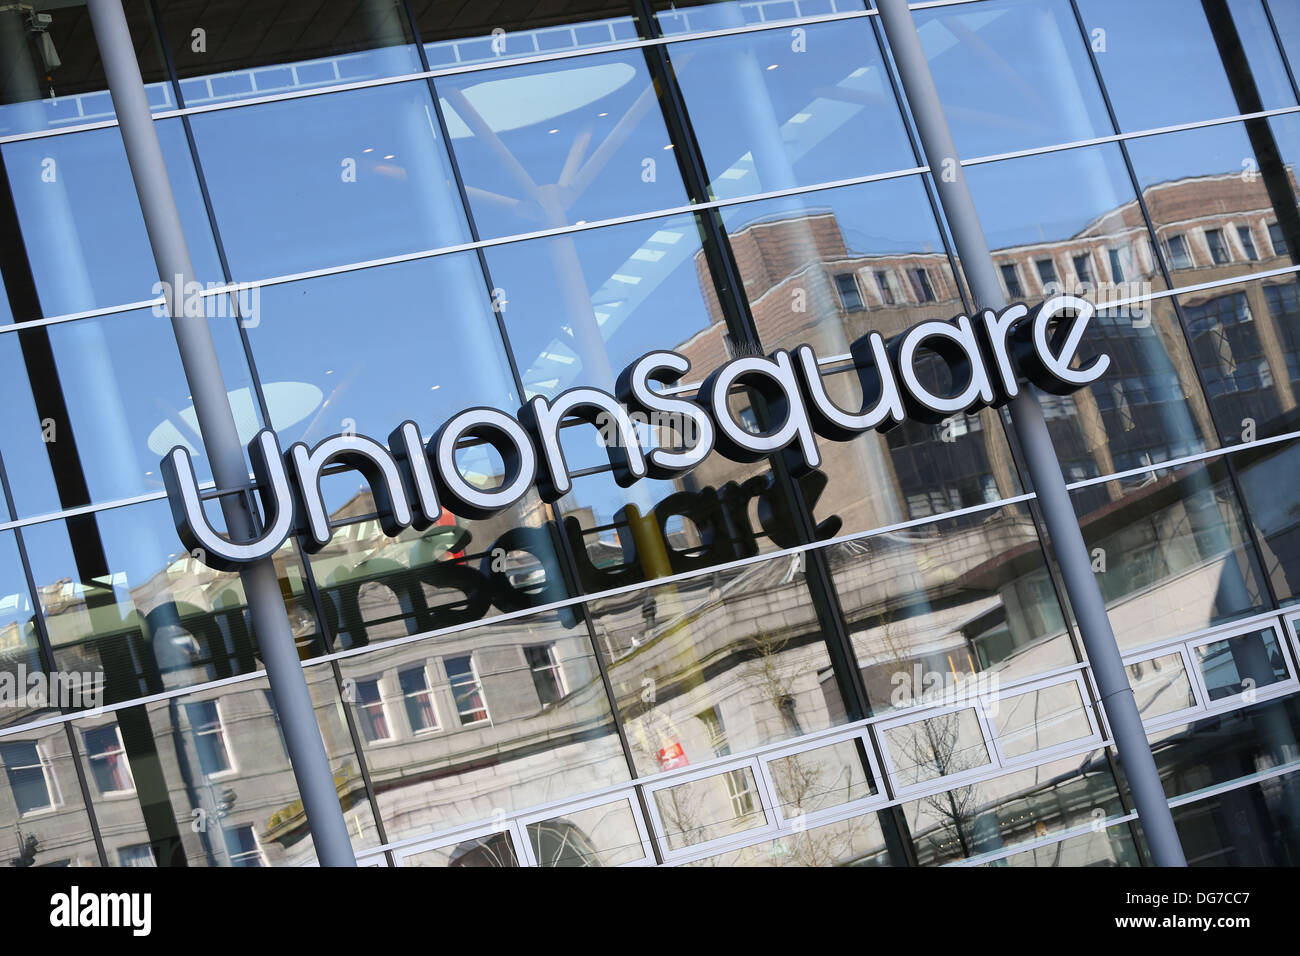 La Union Square shopping center nella città di Aberdeen, Scozia, Regno Unito Foto Stock